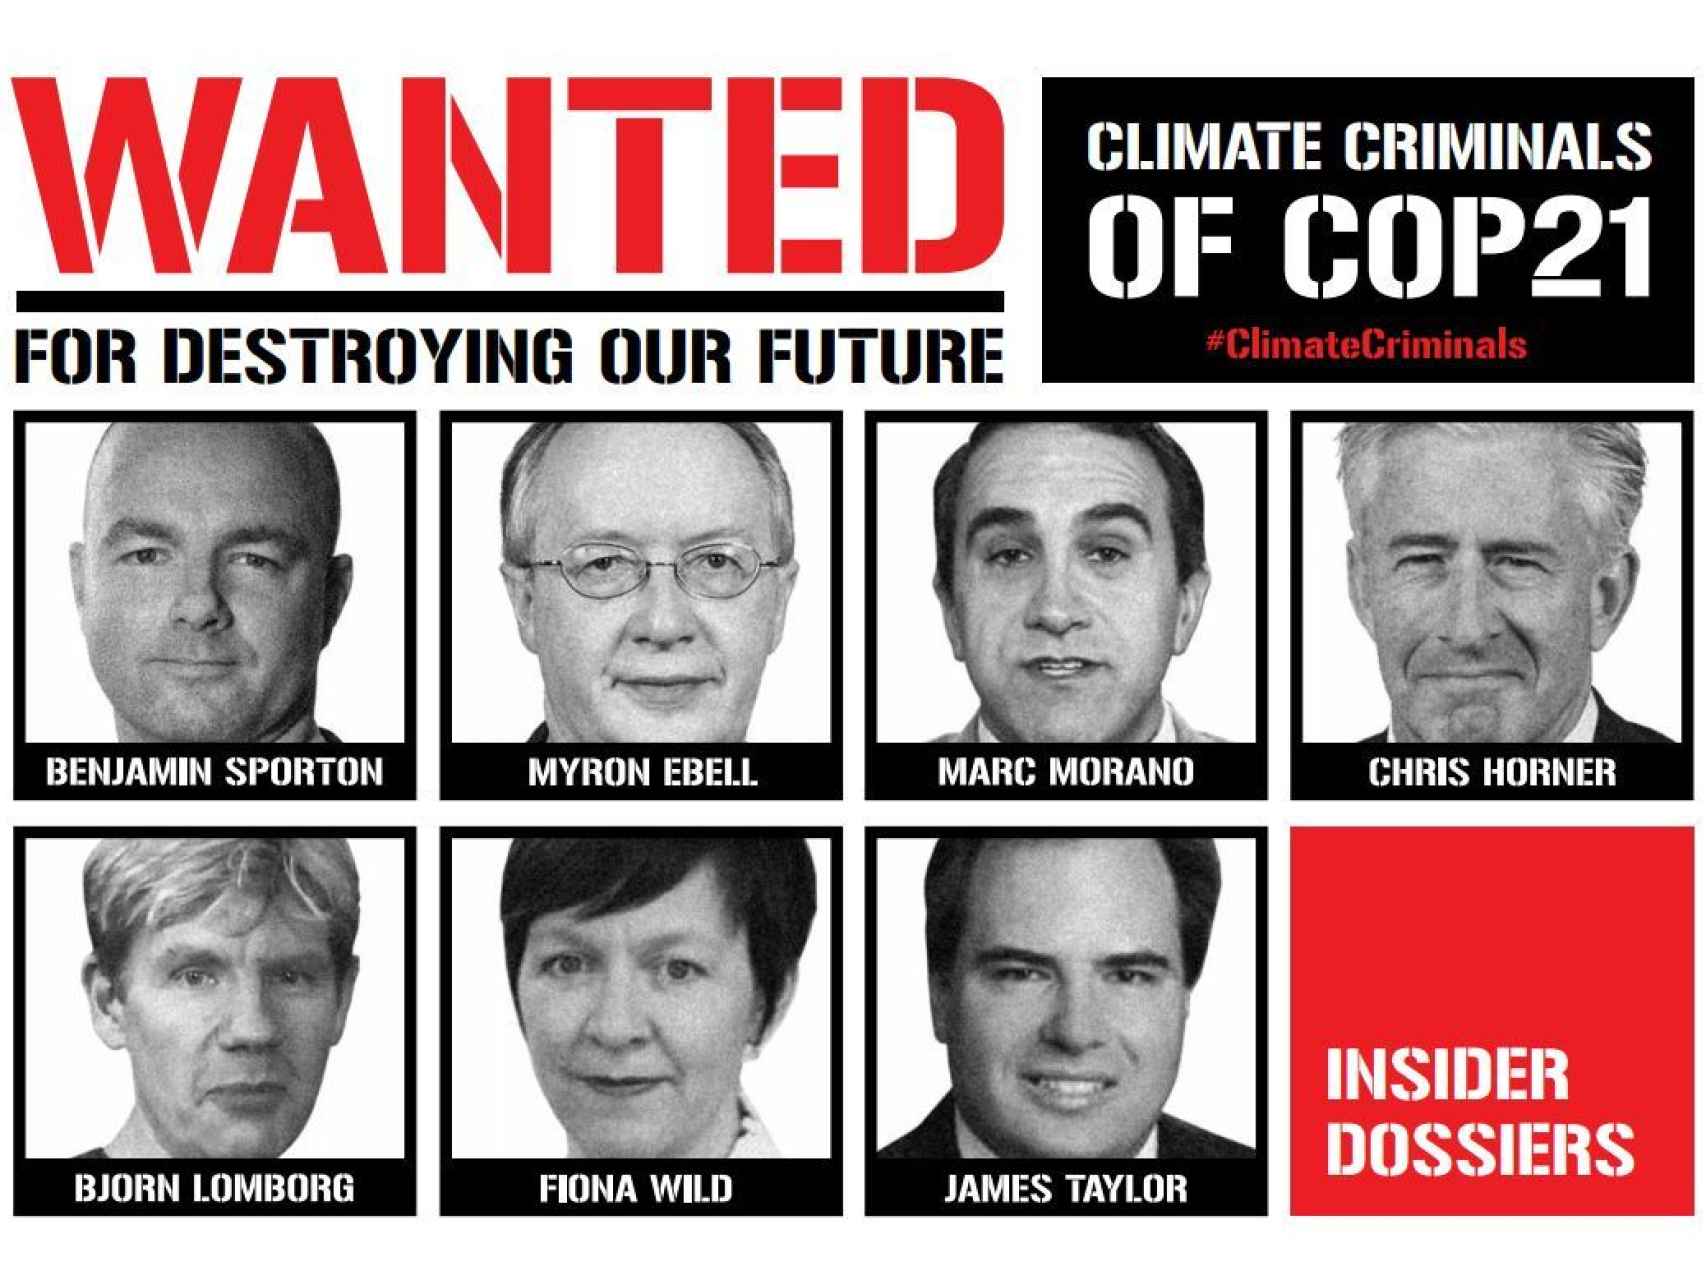 Los criminales climáticos de la COP21, según los ecologistas.